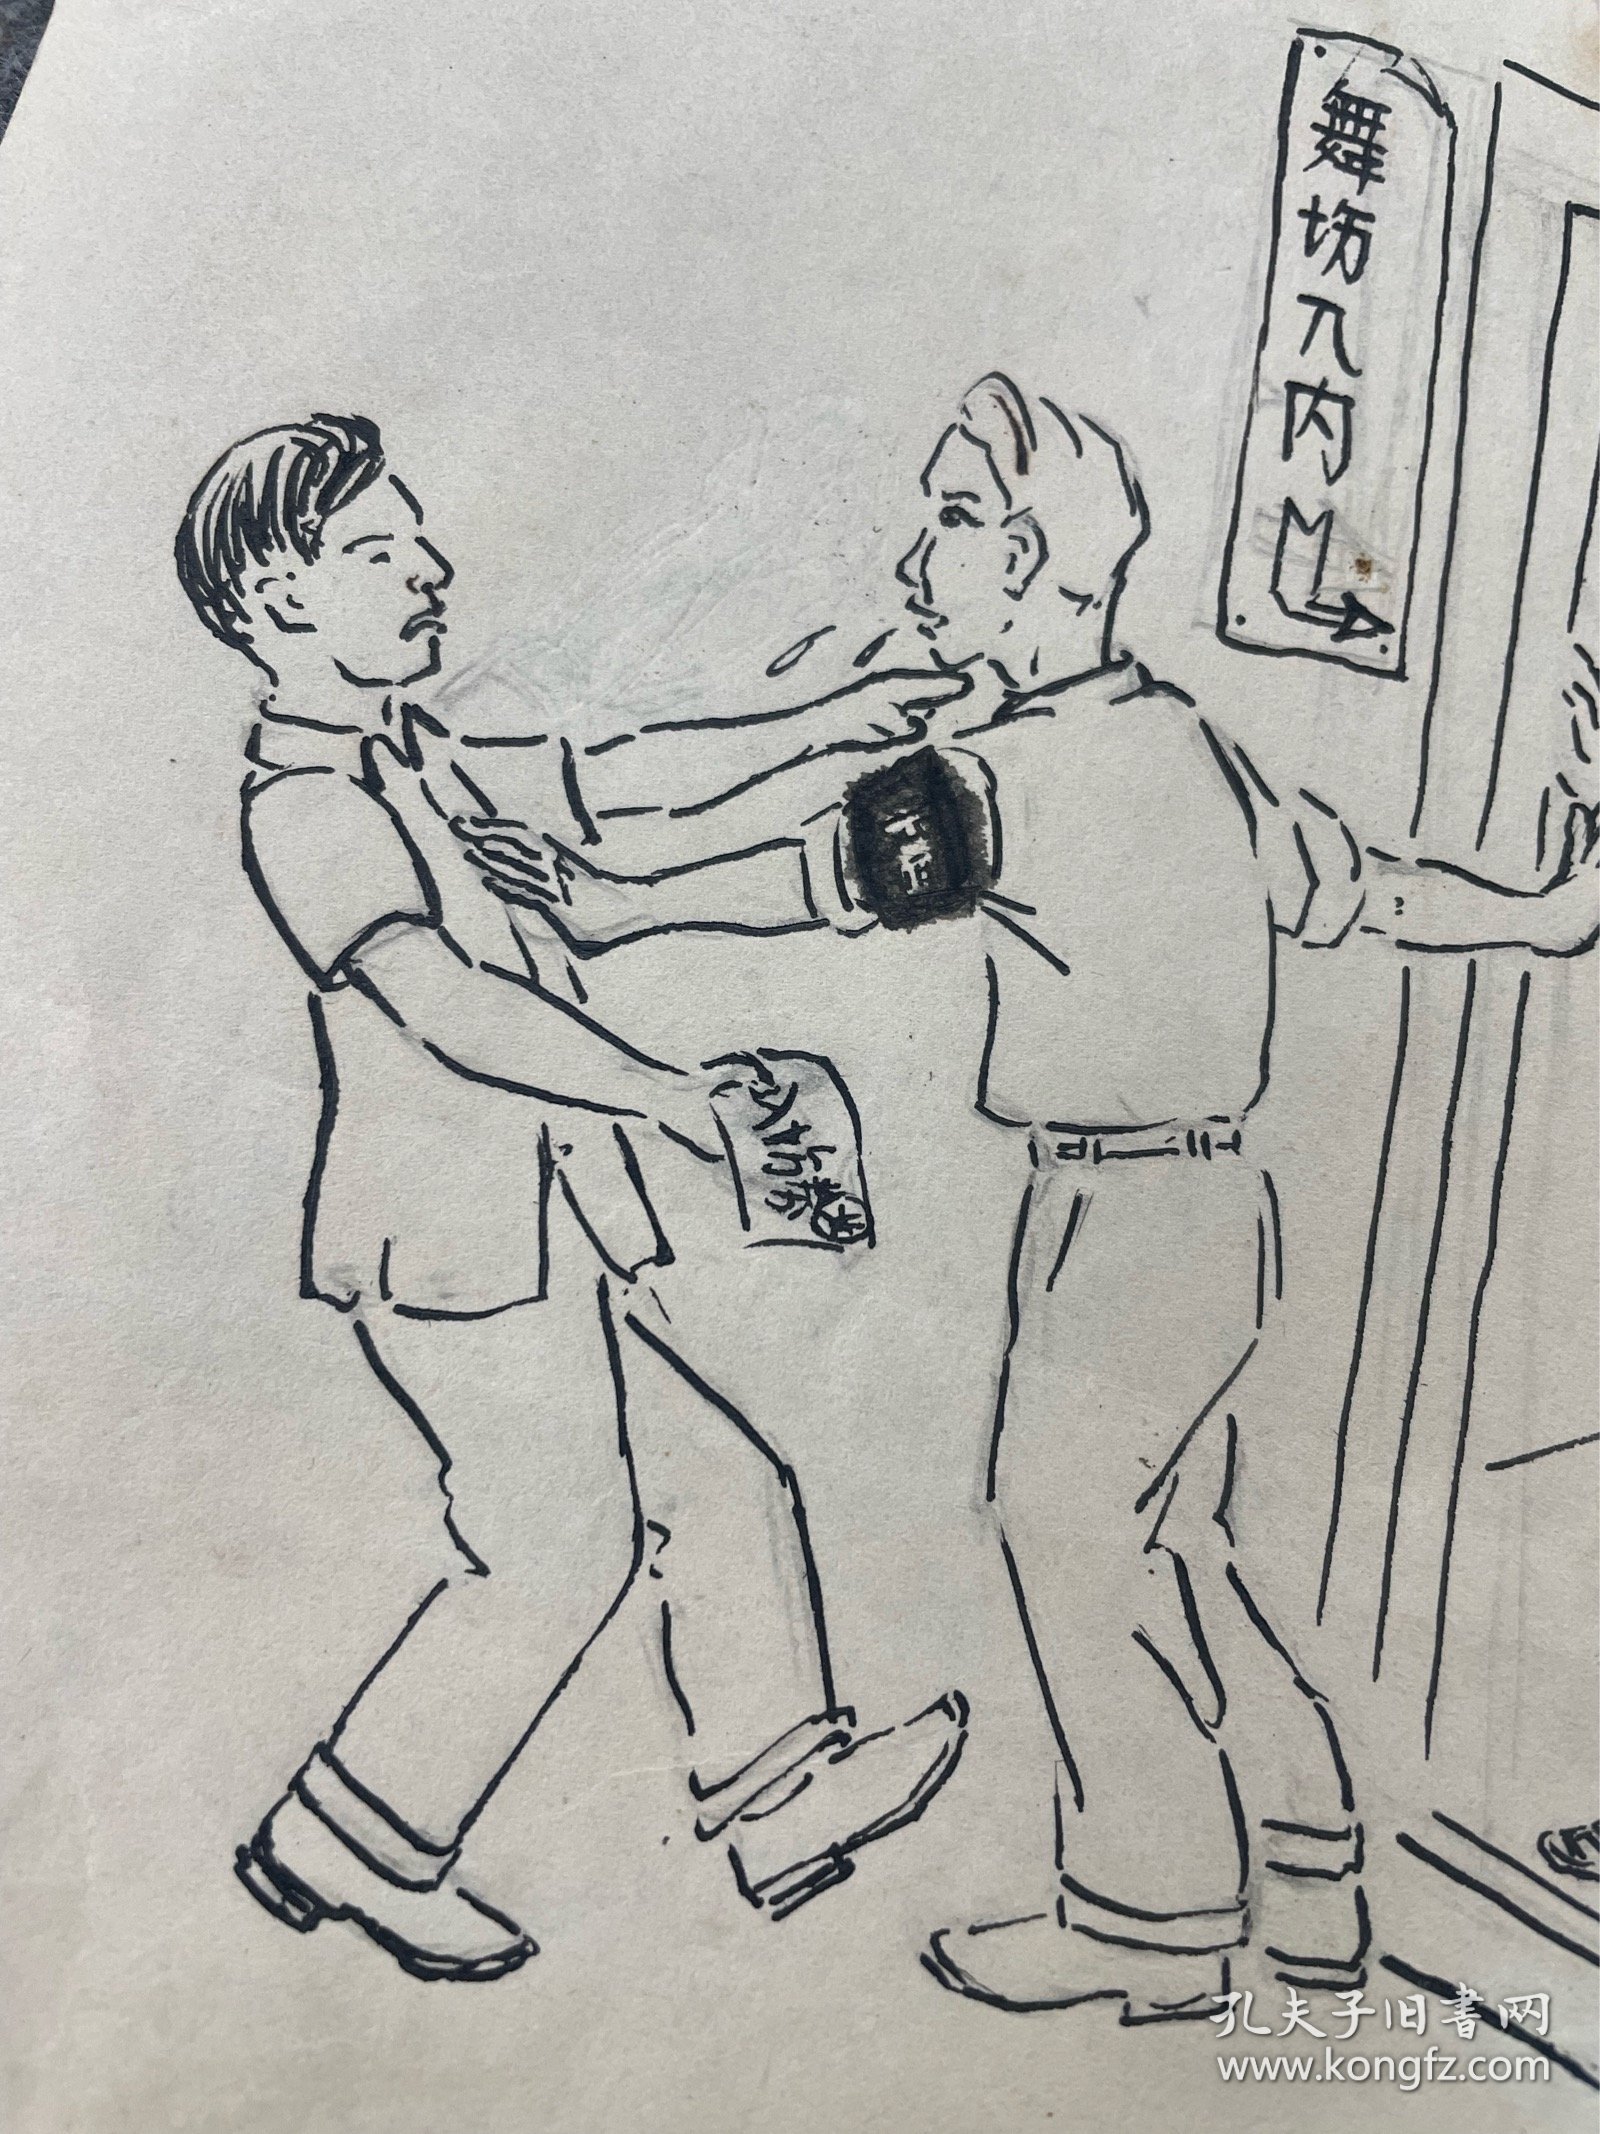 五十年代蔡德生漫画：周末舞会，尺寸品相如图